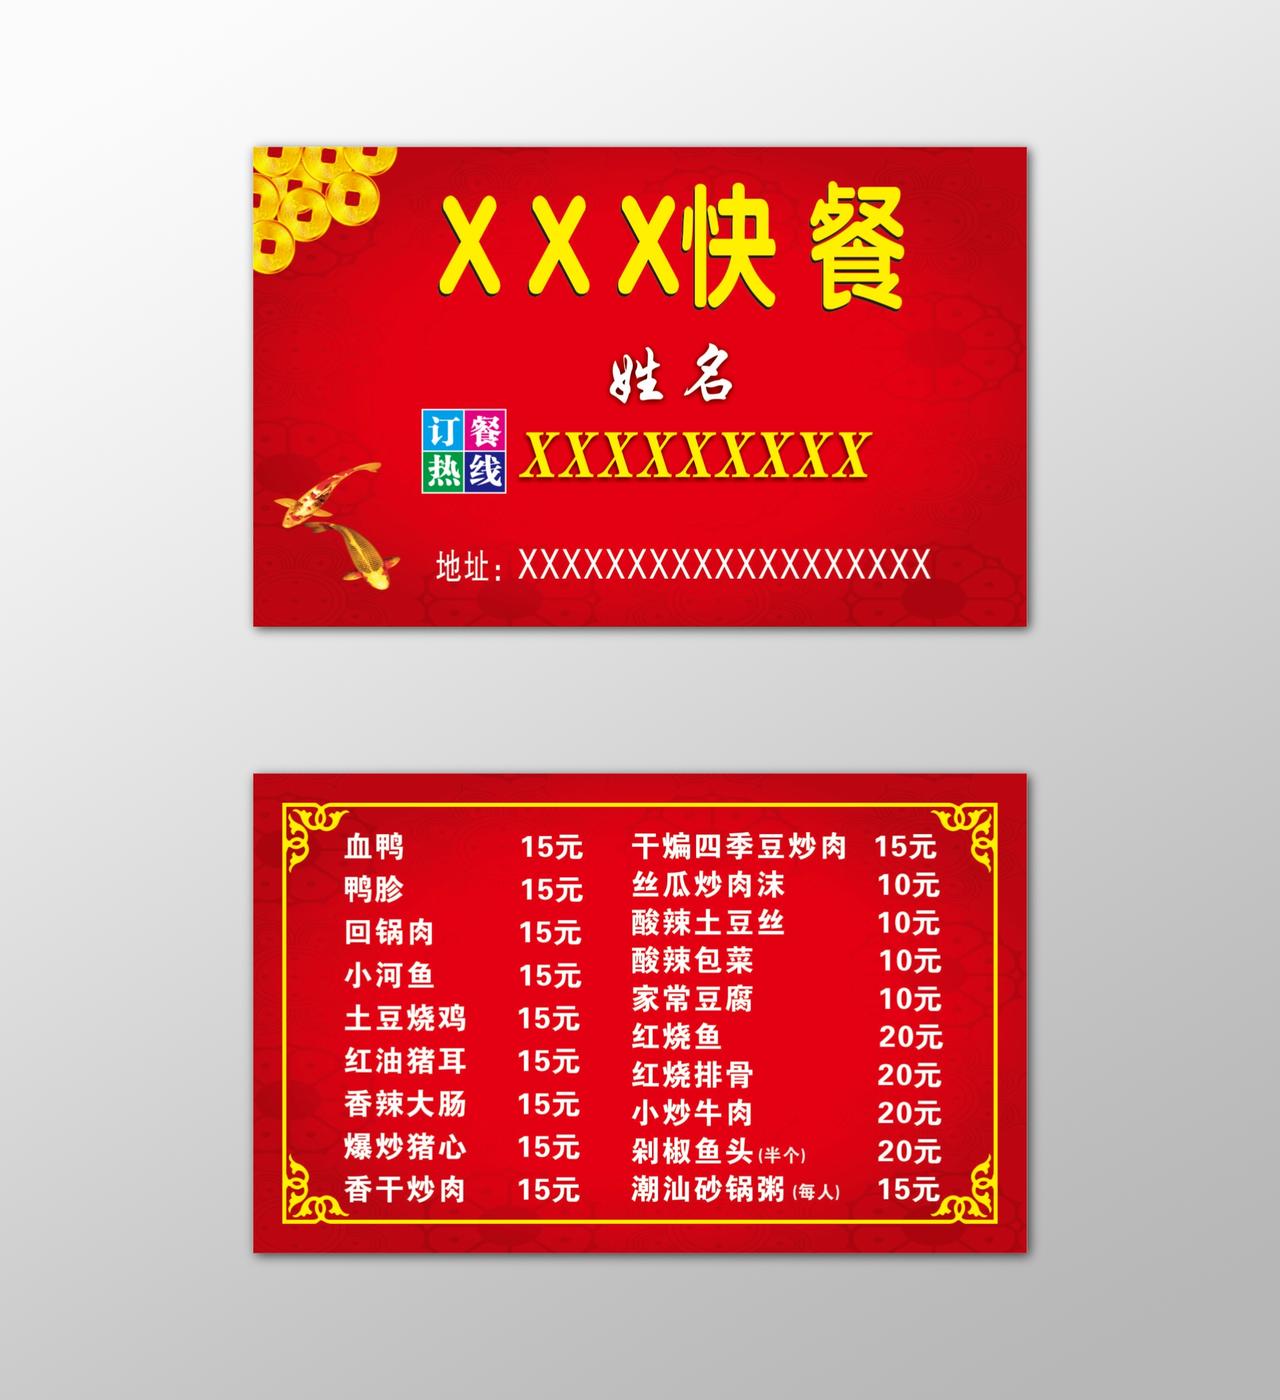 餐馆名片快餐盒饭免费送餐红色简约中国风名片设计模板